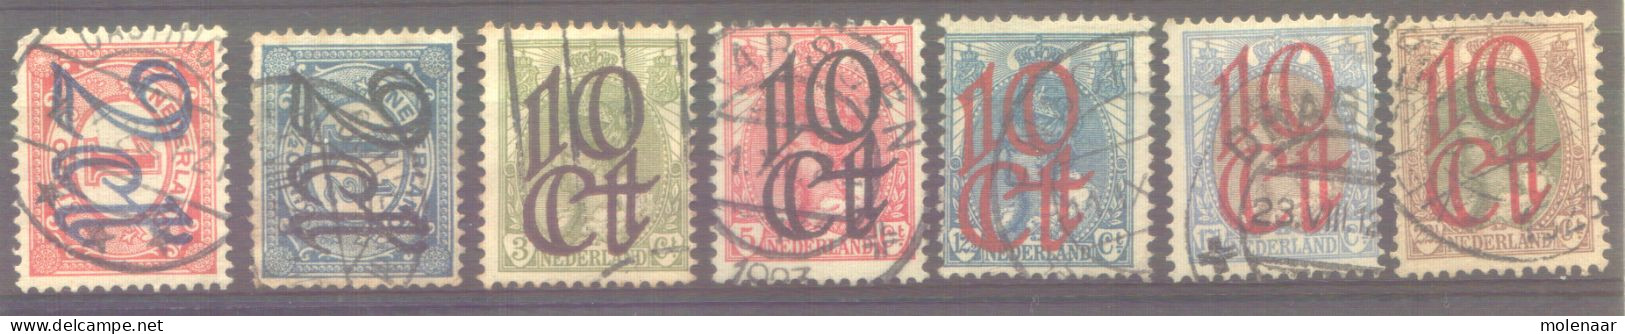 Postzegels > Europa > Nederland > Periode 1891-1948 (Wilhelmina) > 1910-29 > Gebruikt No  114-120 (11869) - Used Stamps